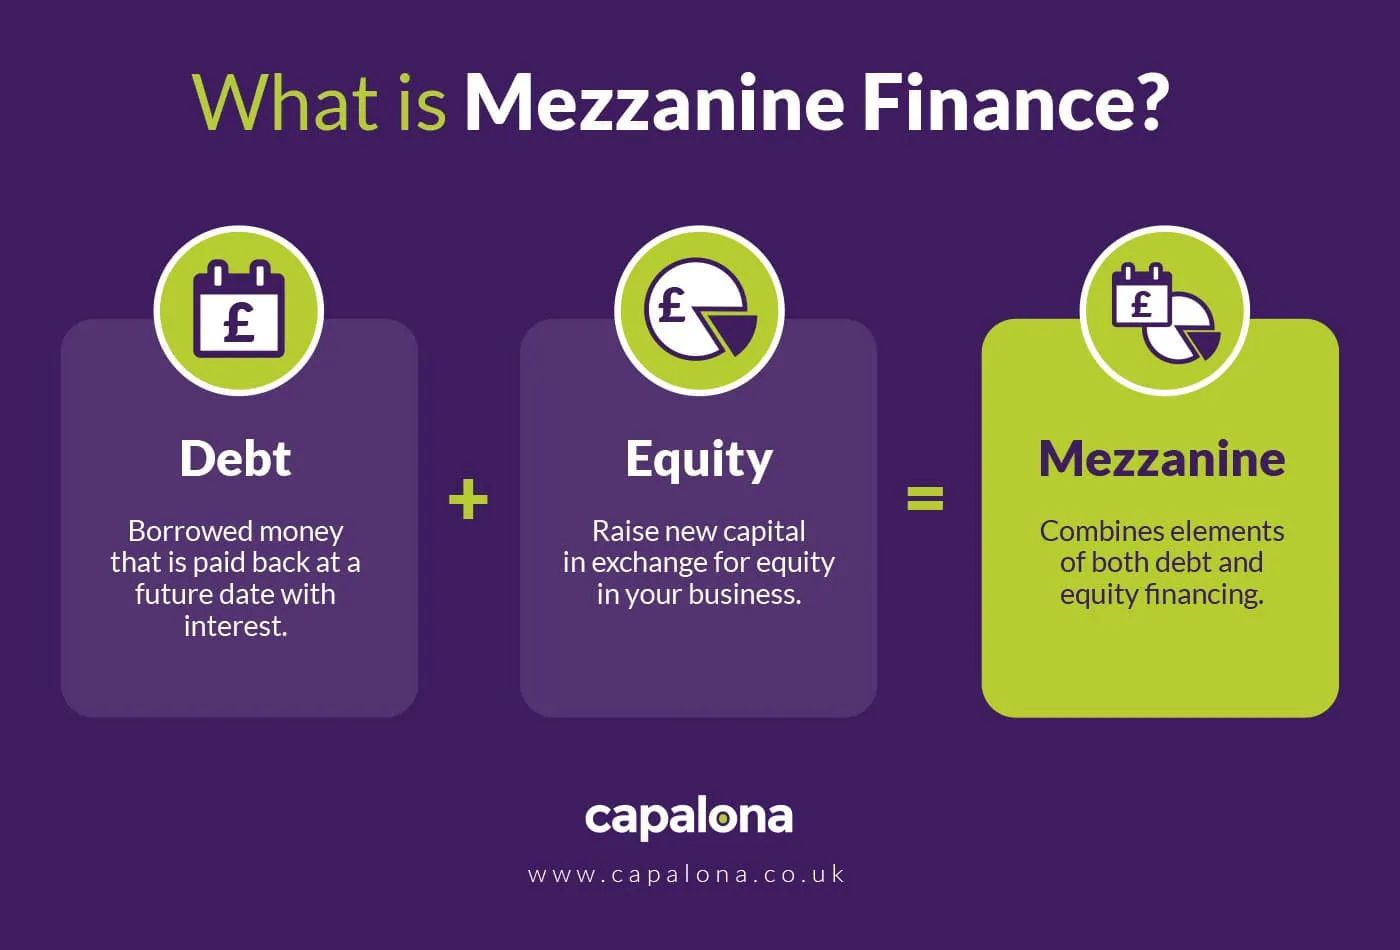 What is mezzanine finance